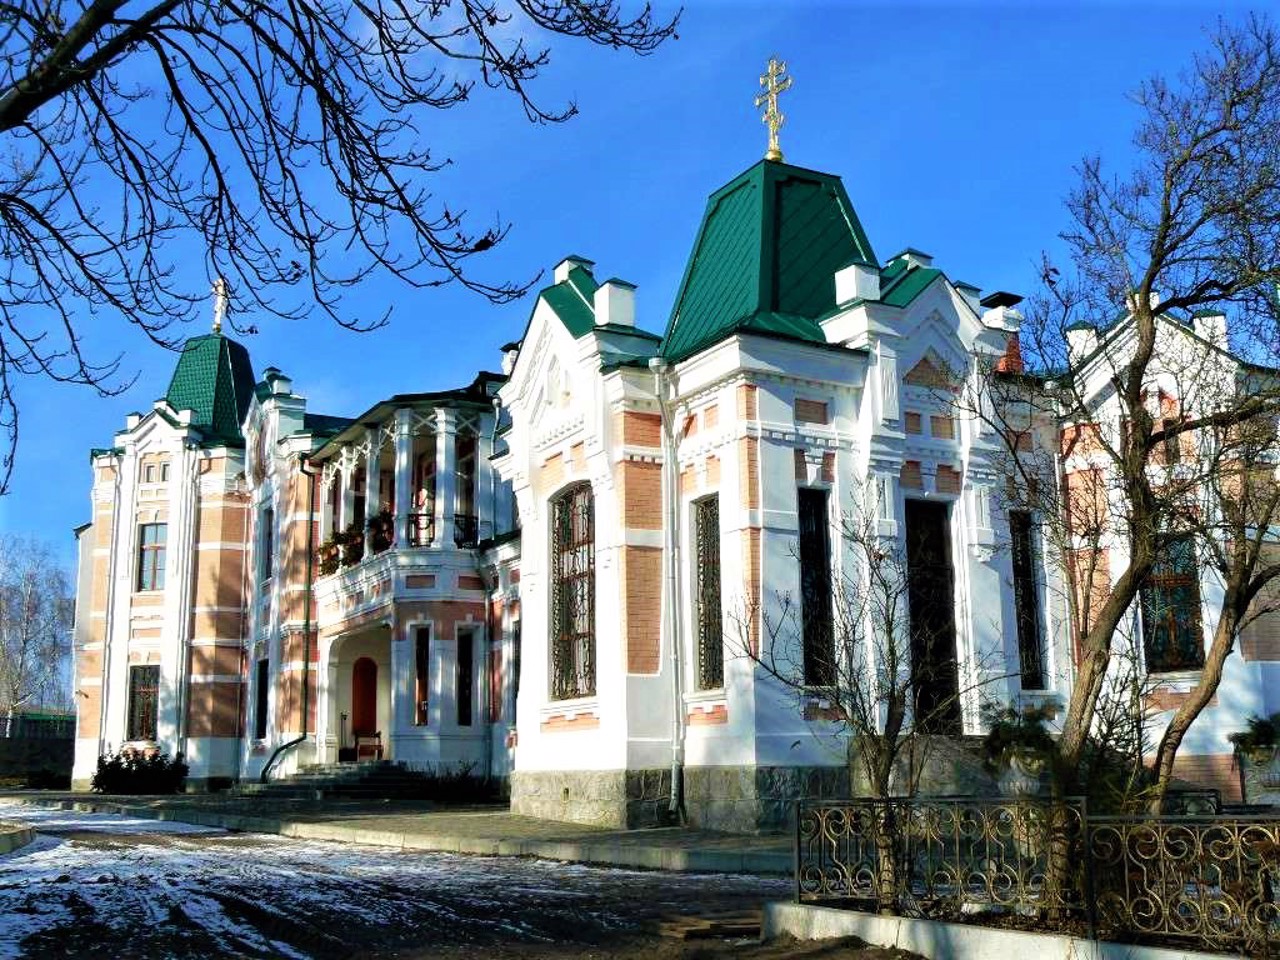 Rizopolozhenskyi Monastery (Khoyetsky Manor), Tomashivka